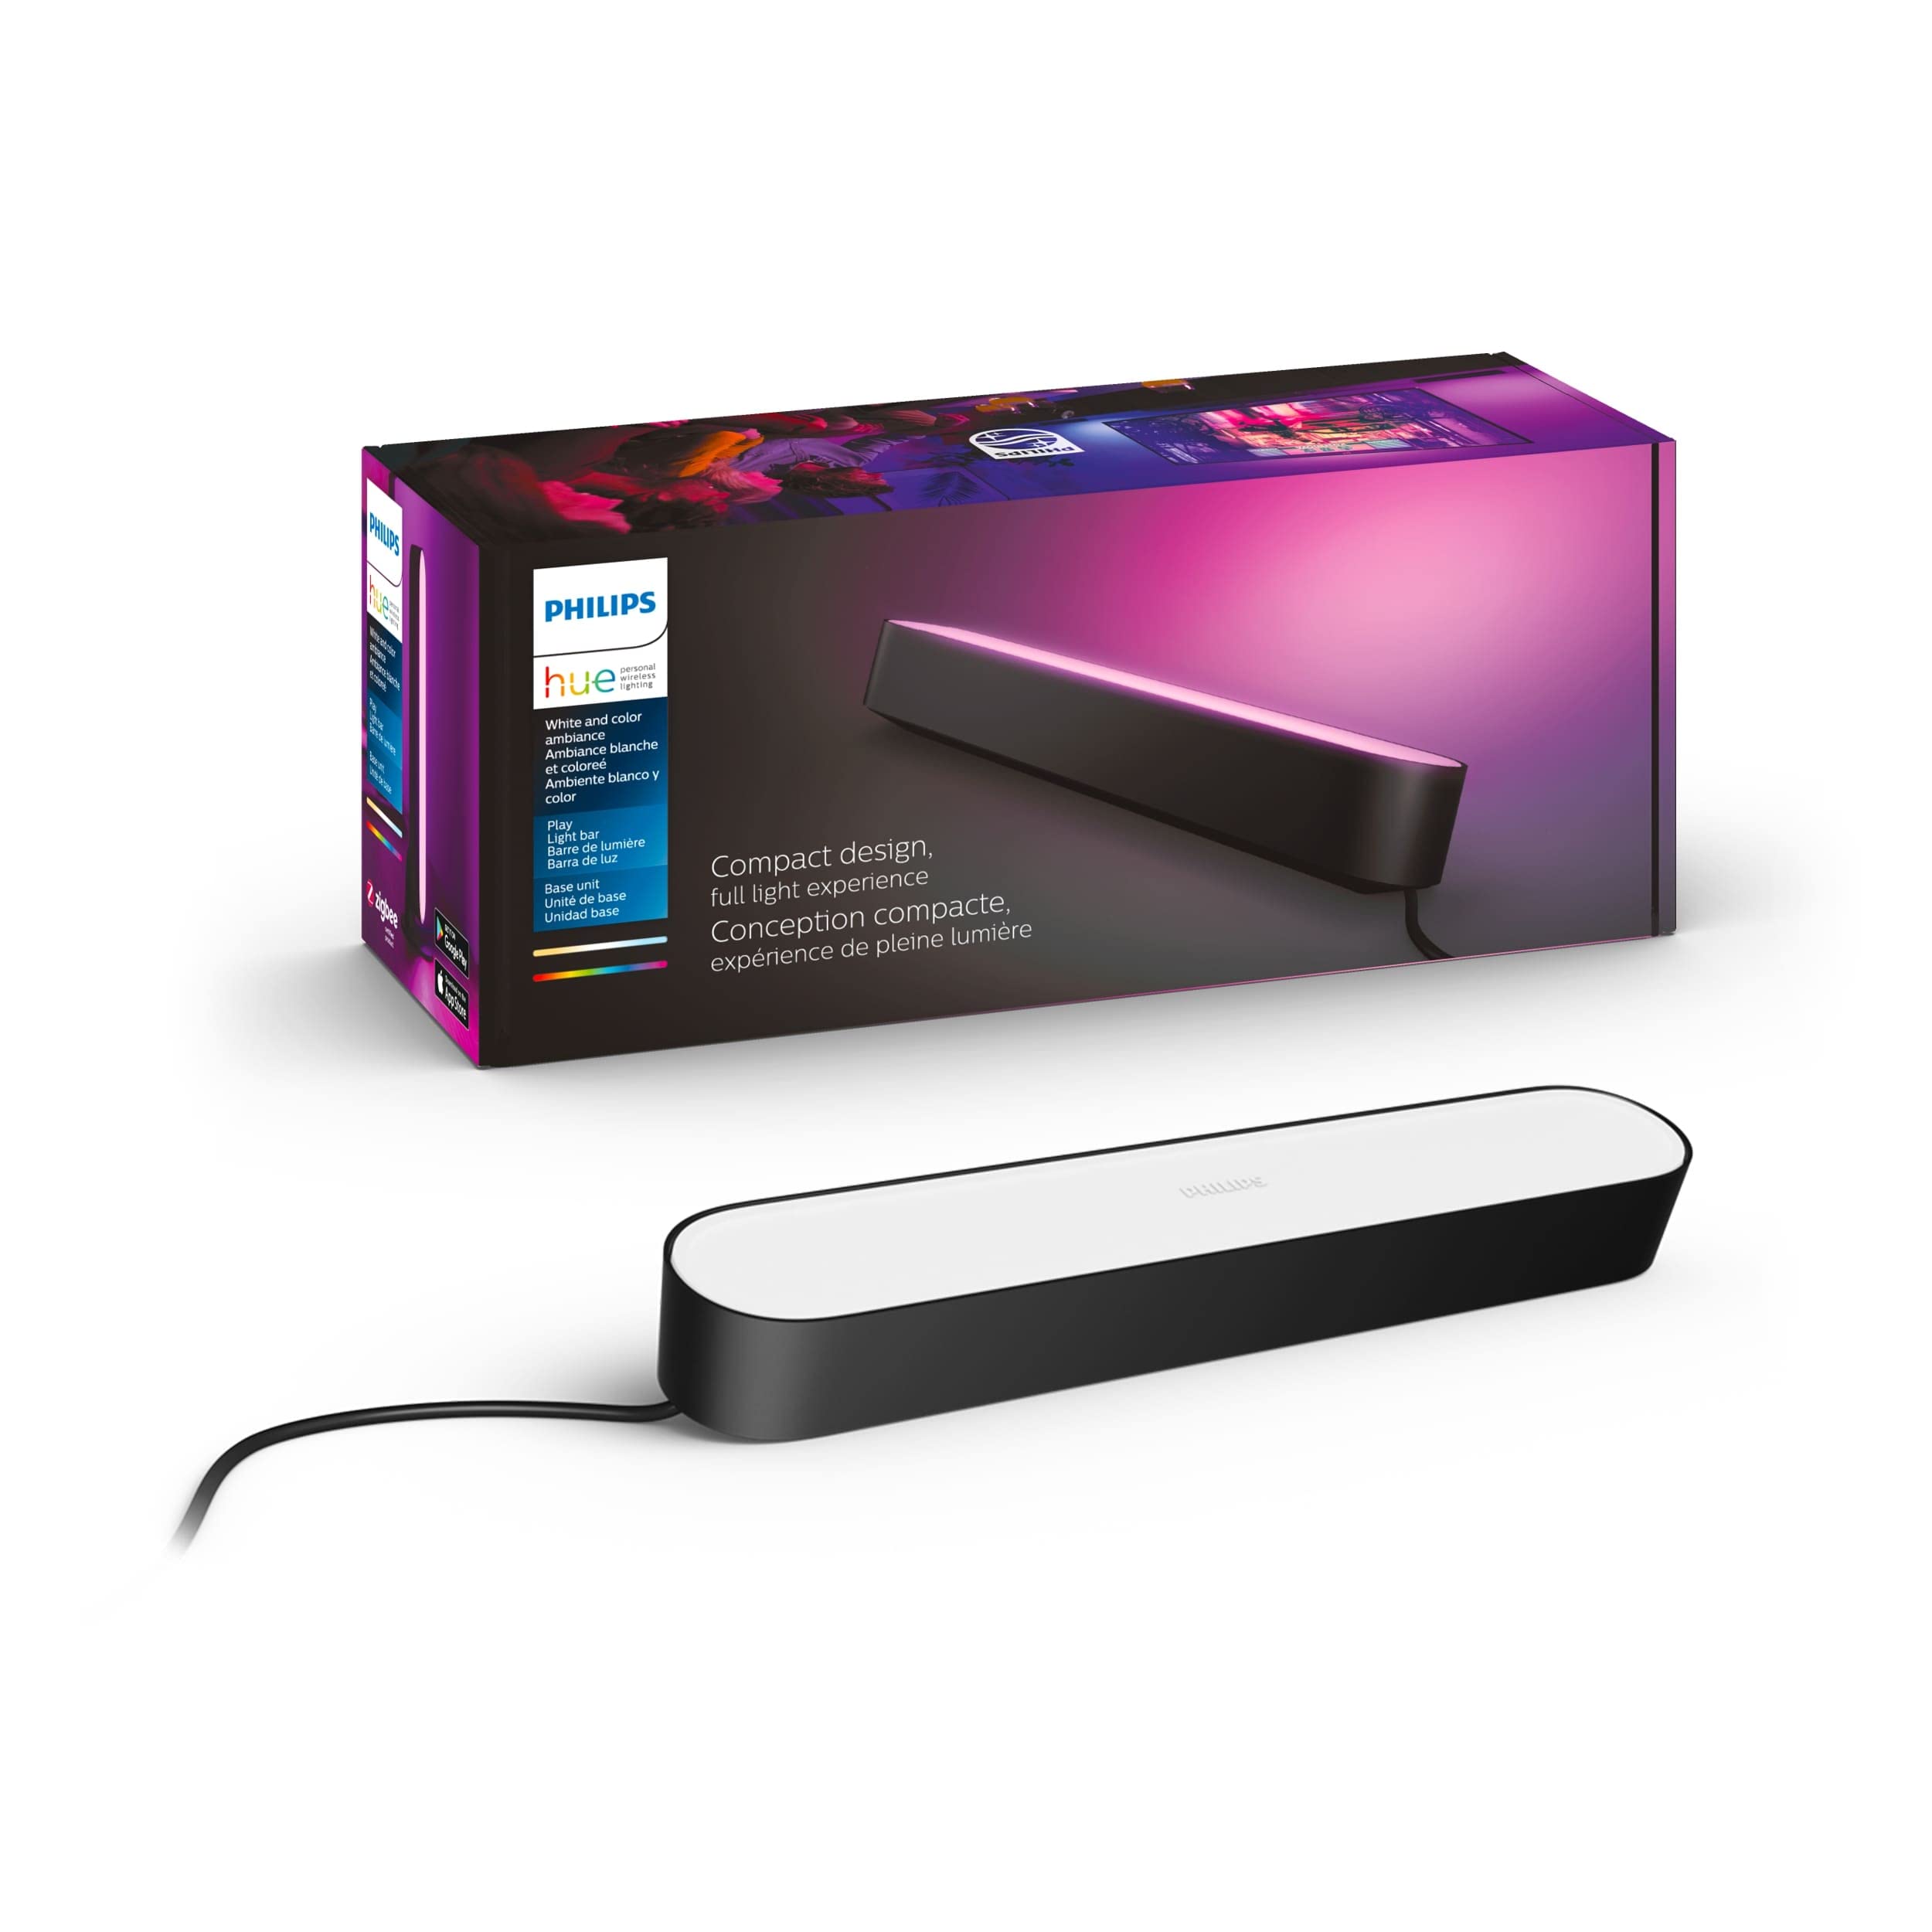 Philips Hue Play ホワイト & カラー スマート ライト、2 パック ベース キット、ハブが必要/電源付属 (Alexa、Apple Homekit、Google Home と互換性あり)